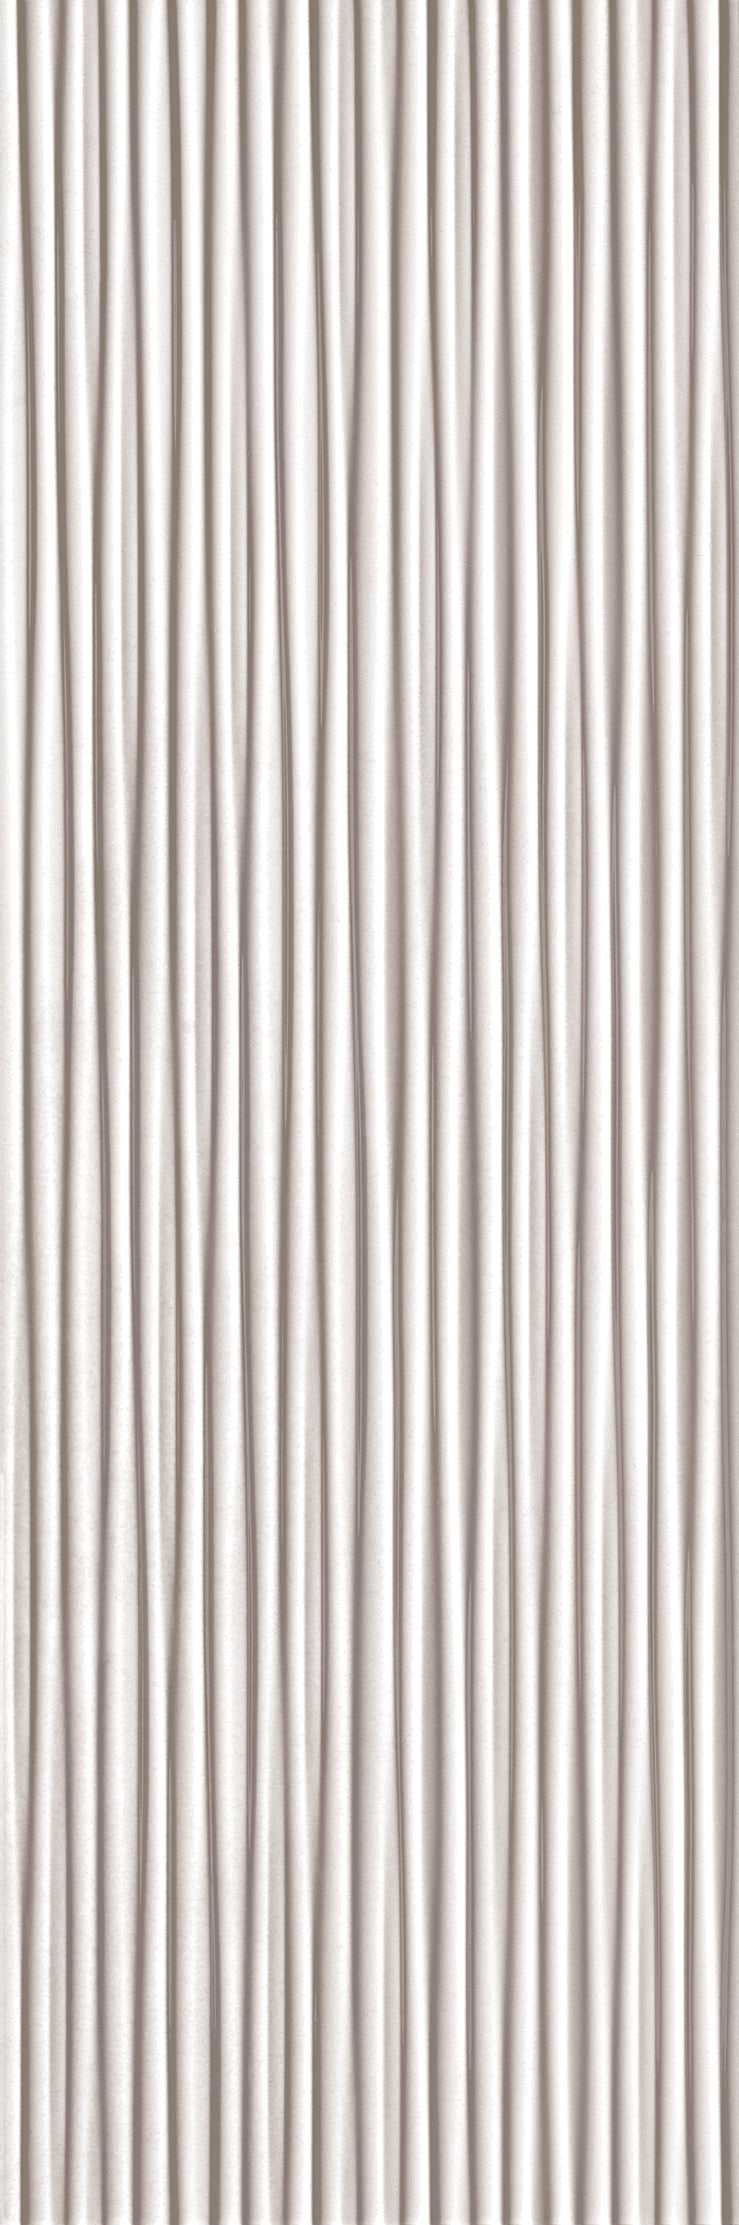 EVOQUE Plisse White Italian White Body Wall Tiles (IT0028)